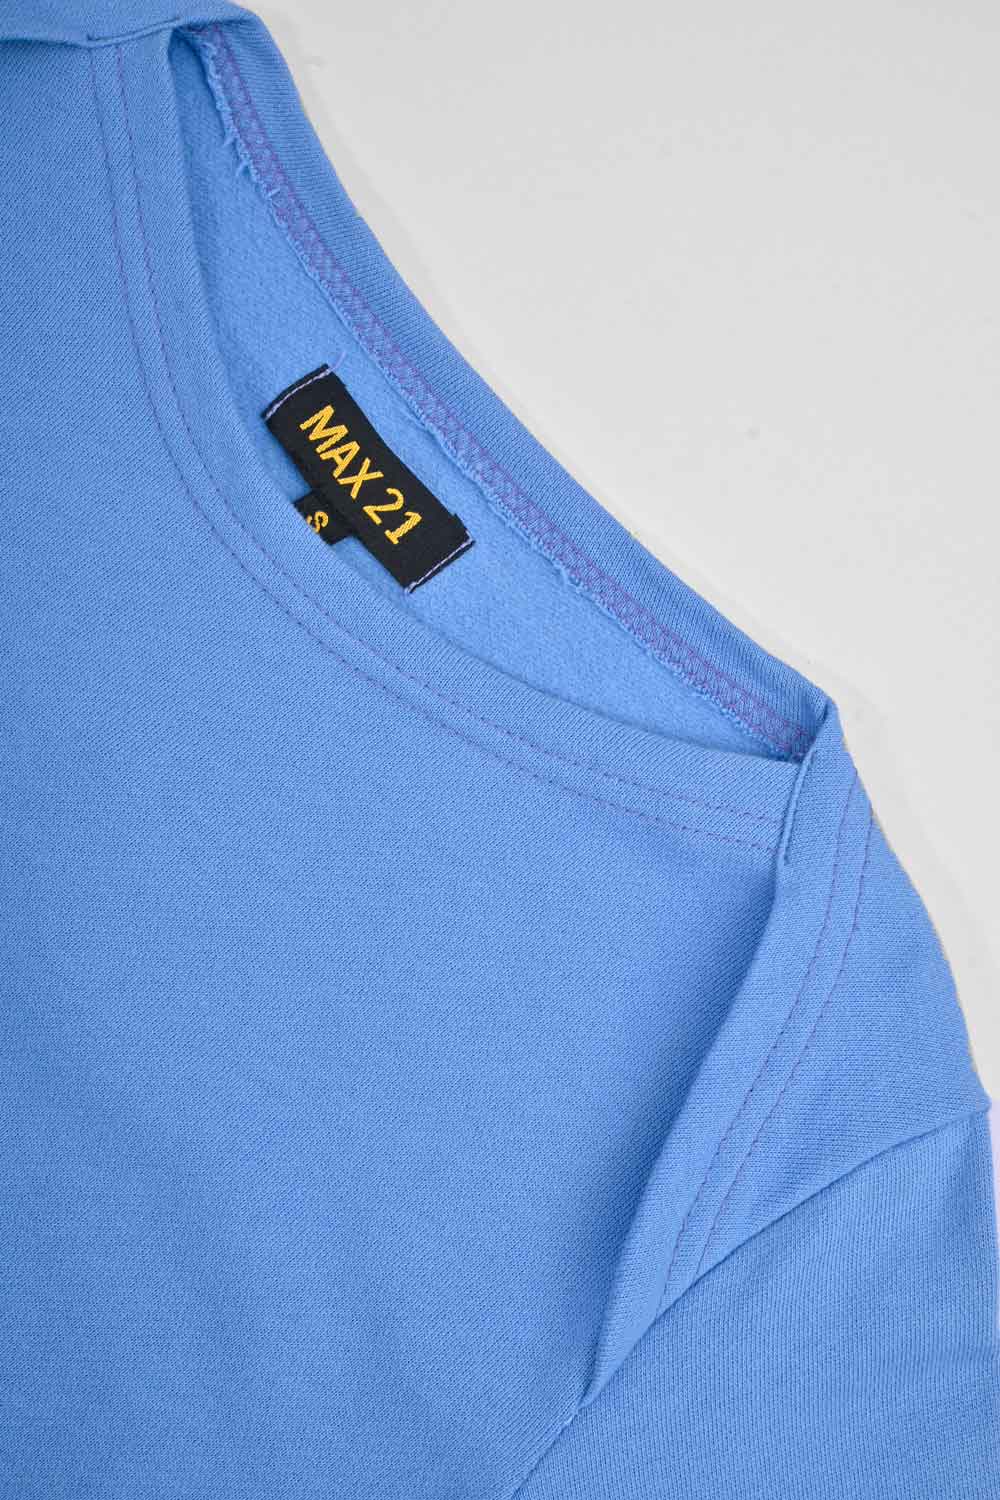 Max 21 Women’s Stylish Long Sleeves Sweat Shirt Women's Casual Shirt SZK 